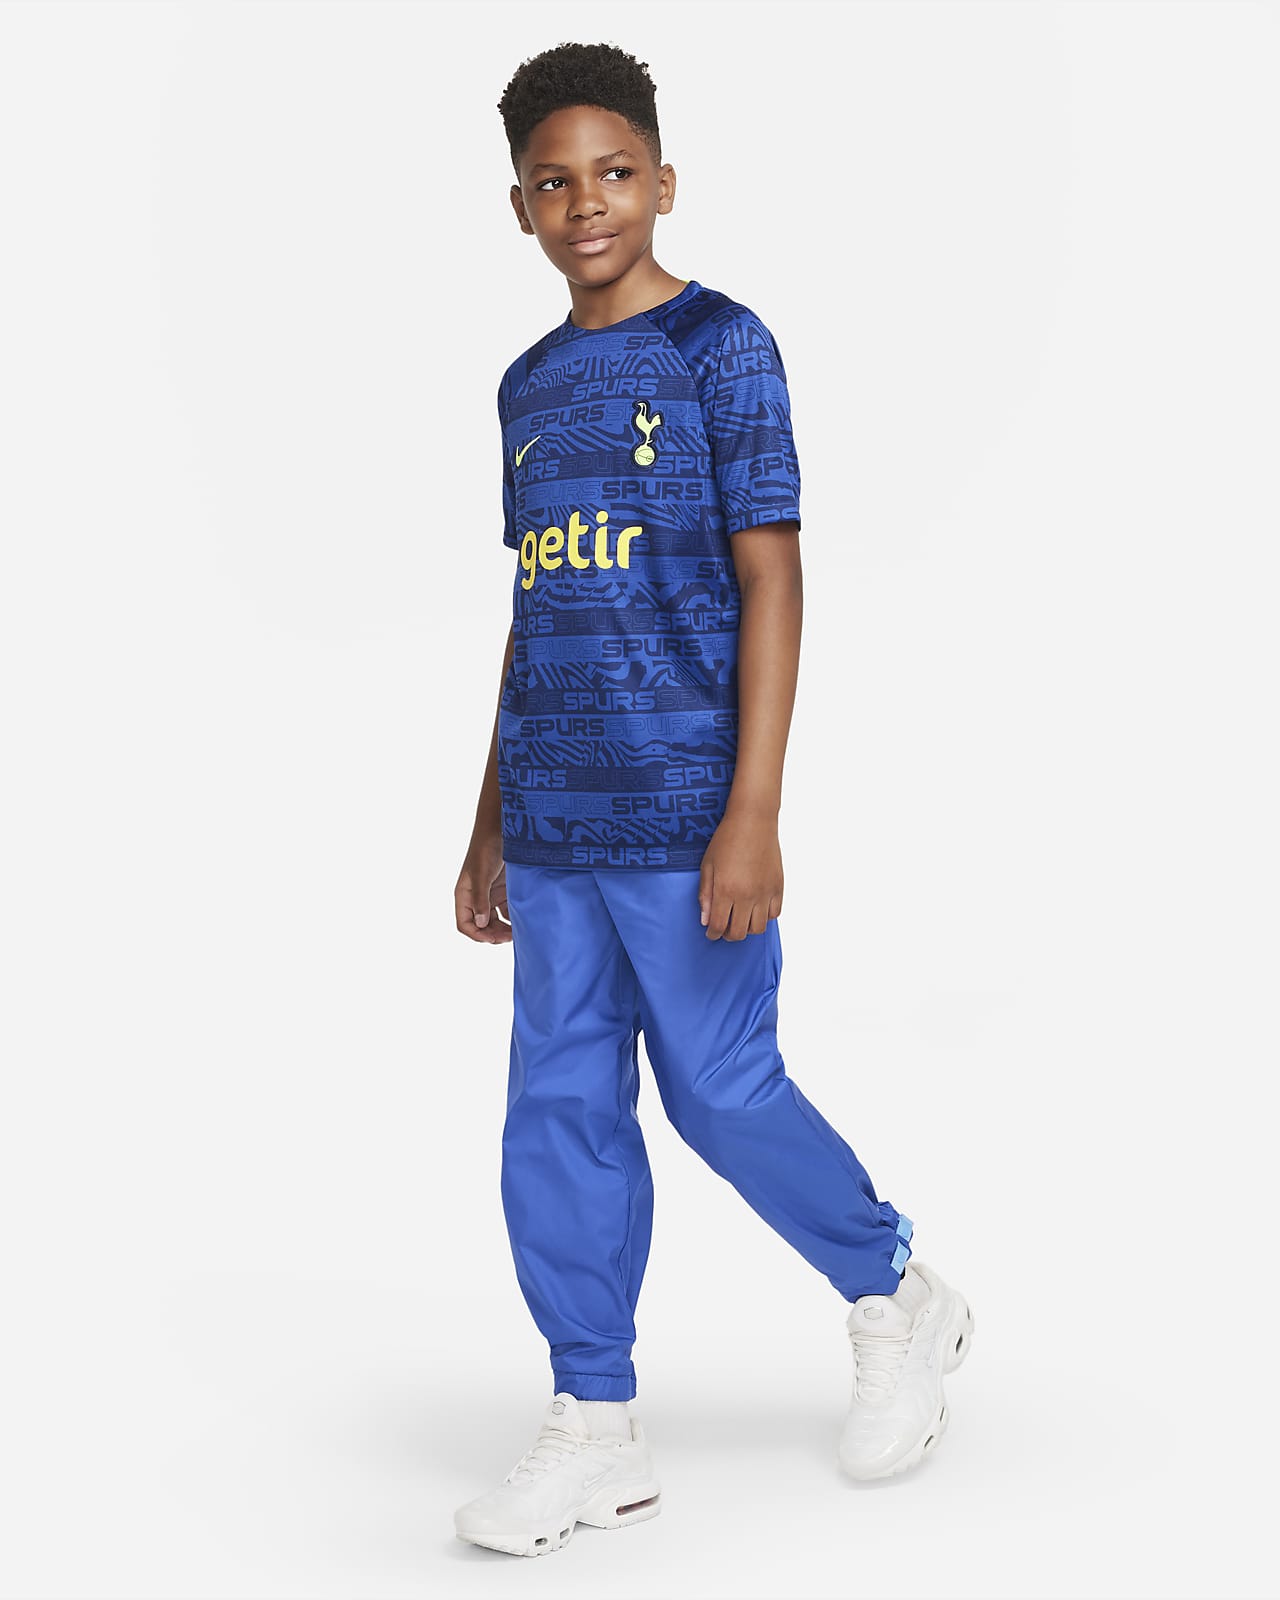 Tottenham Spurs Away Kids Football Kit 2021/22, Best Deal